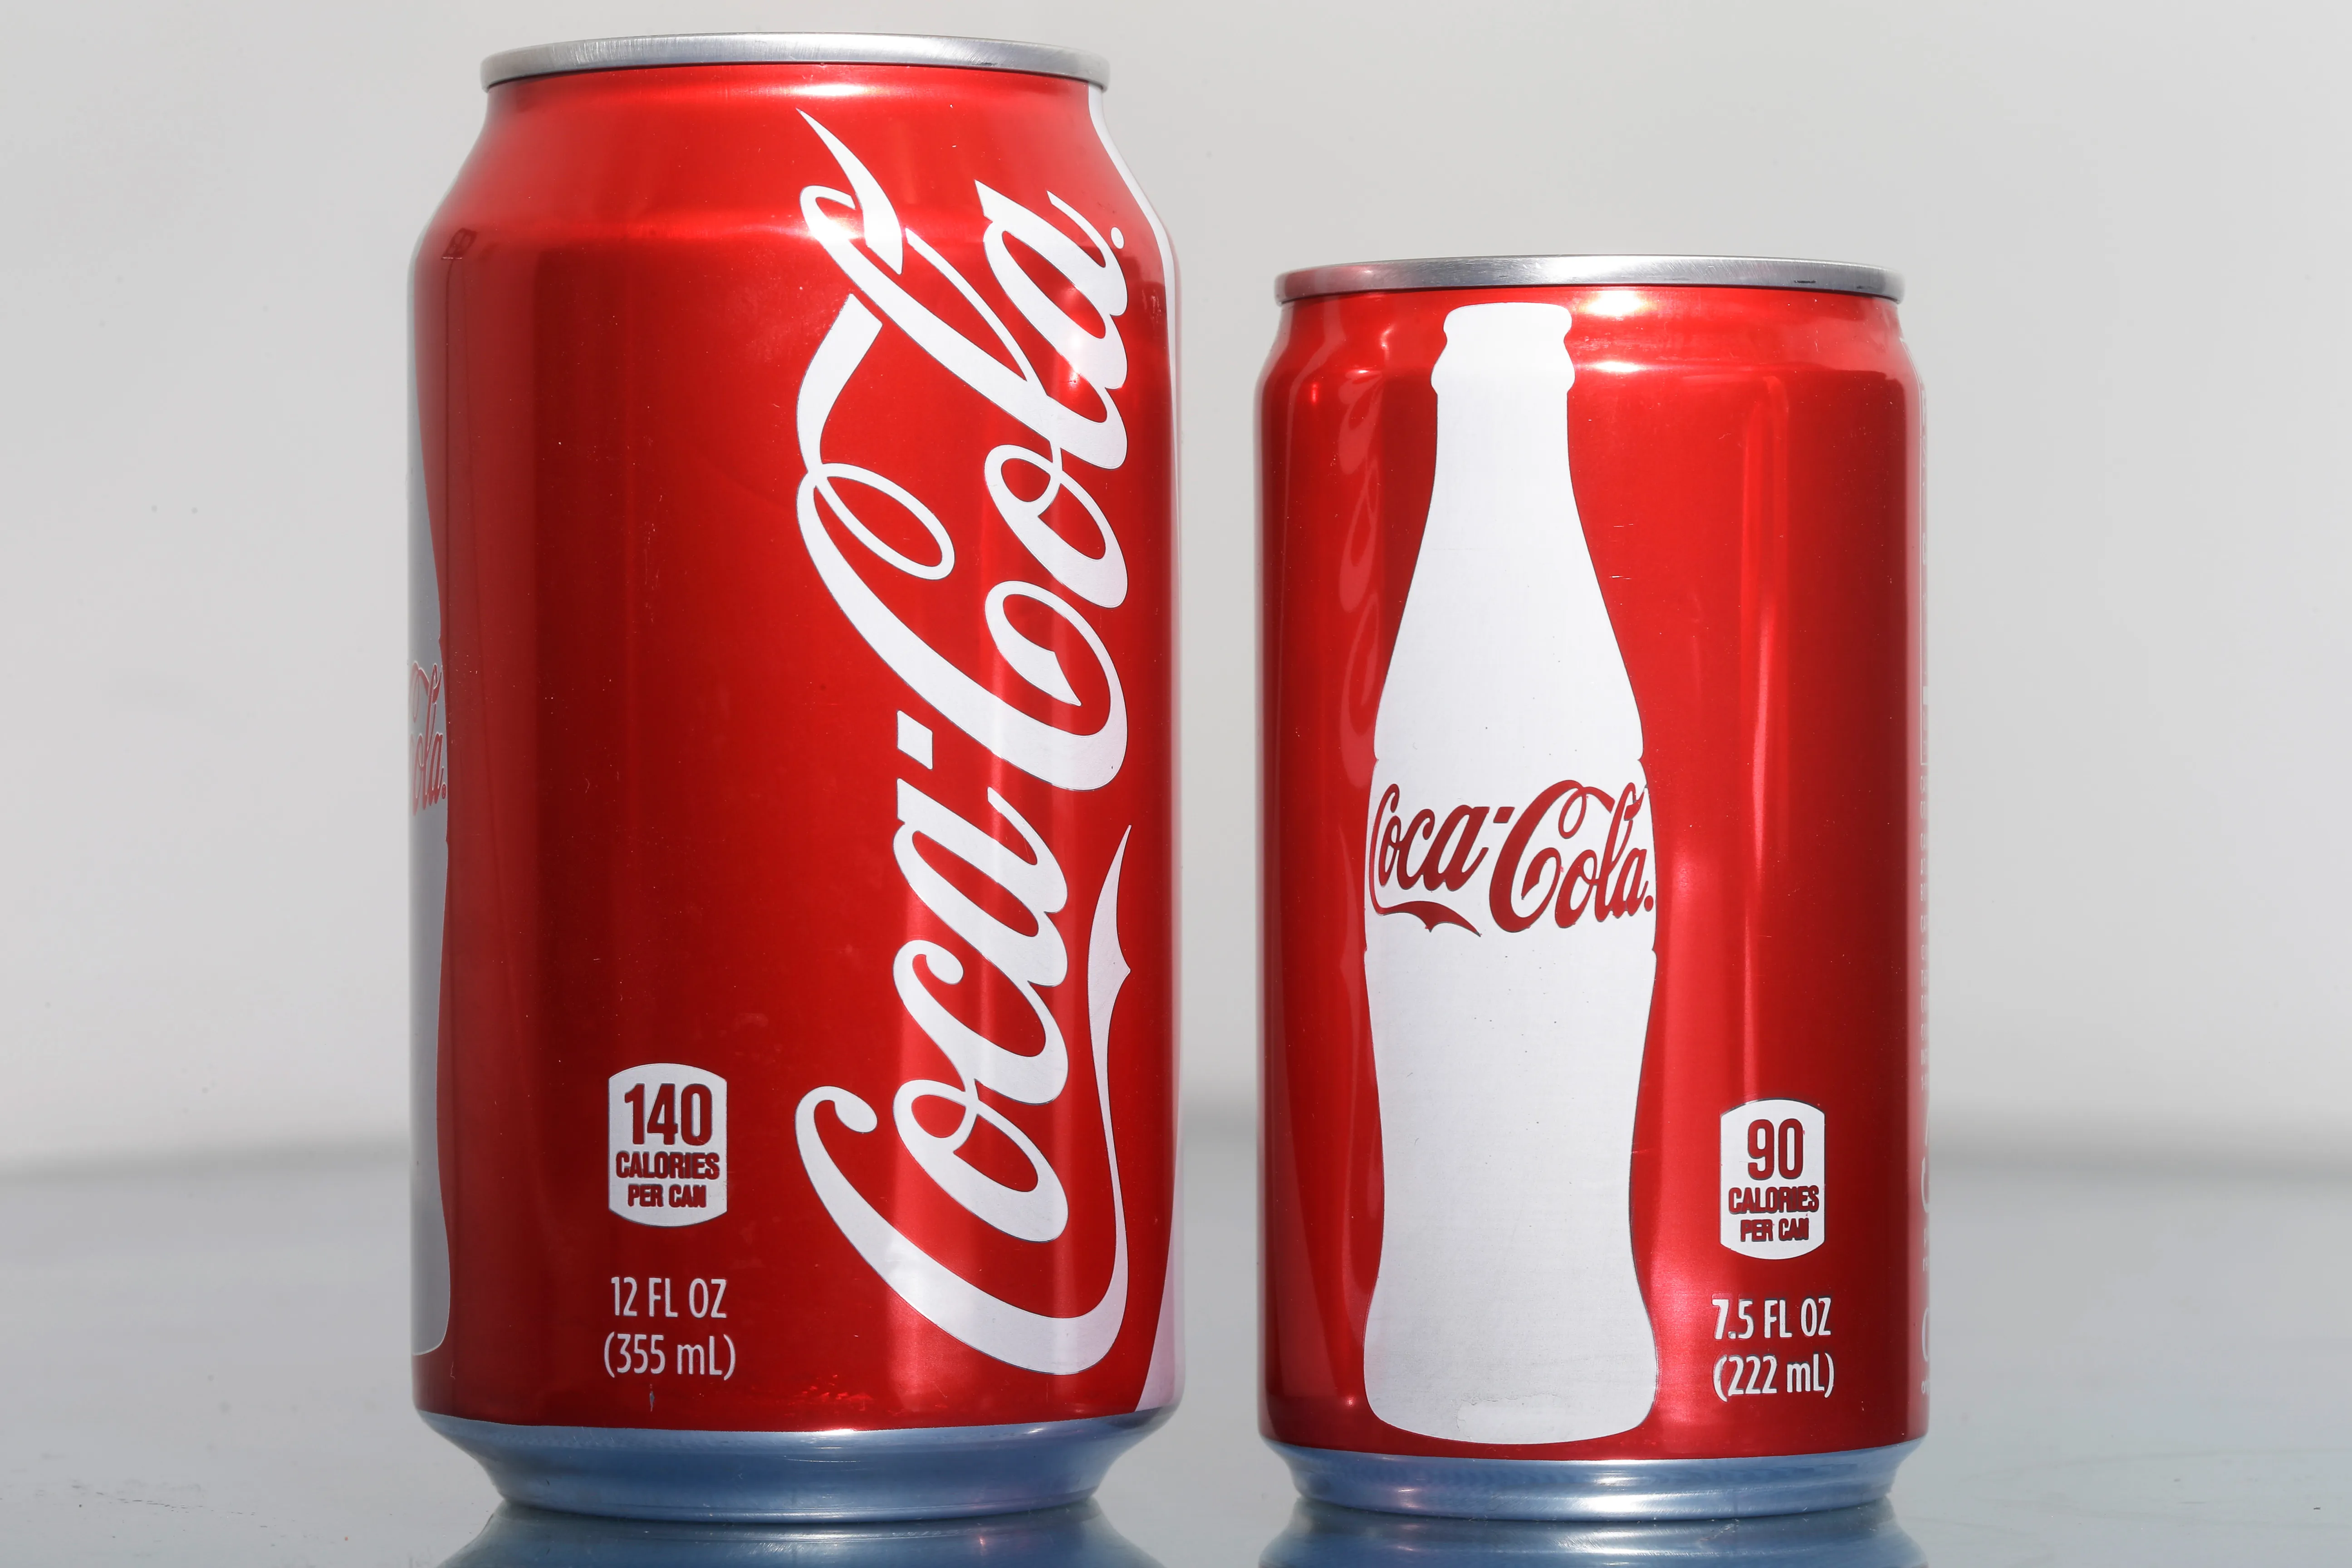 Coca-Cola® Soda Cans, 12 fl oz - Food 4 Less